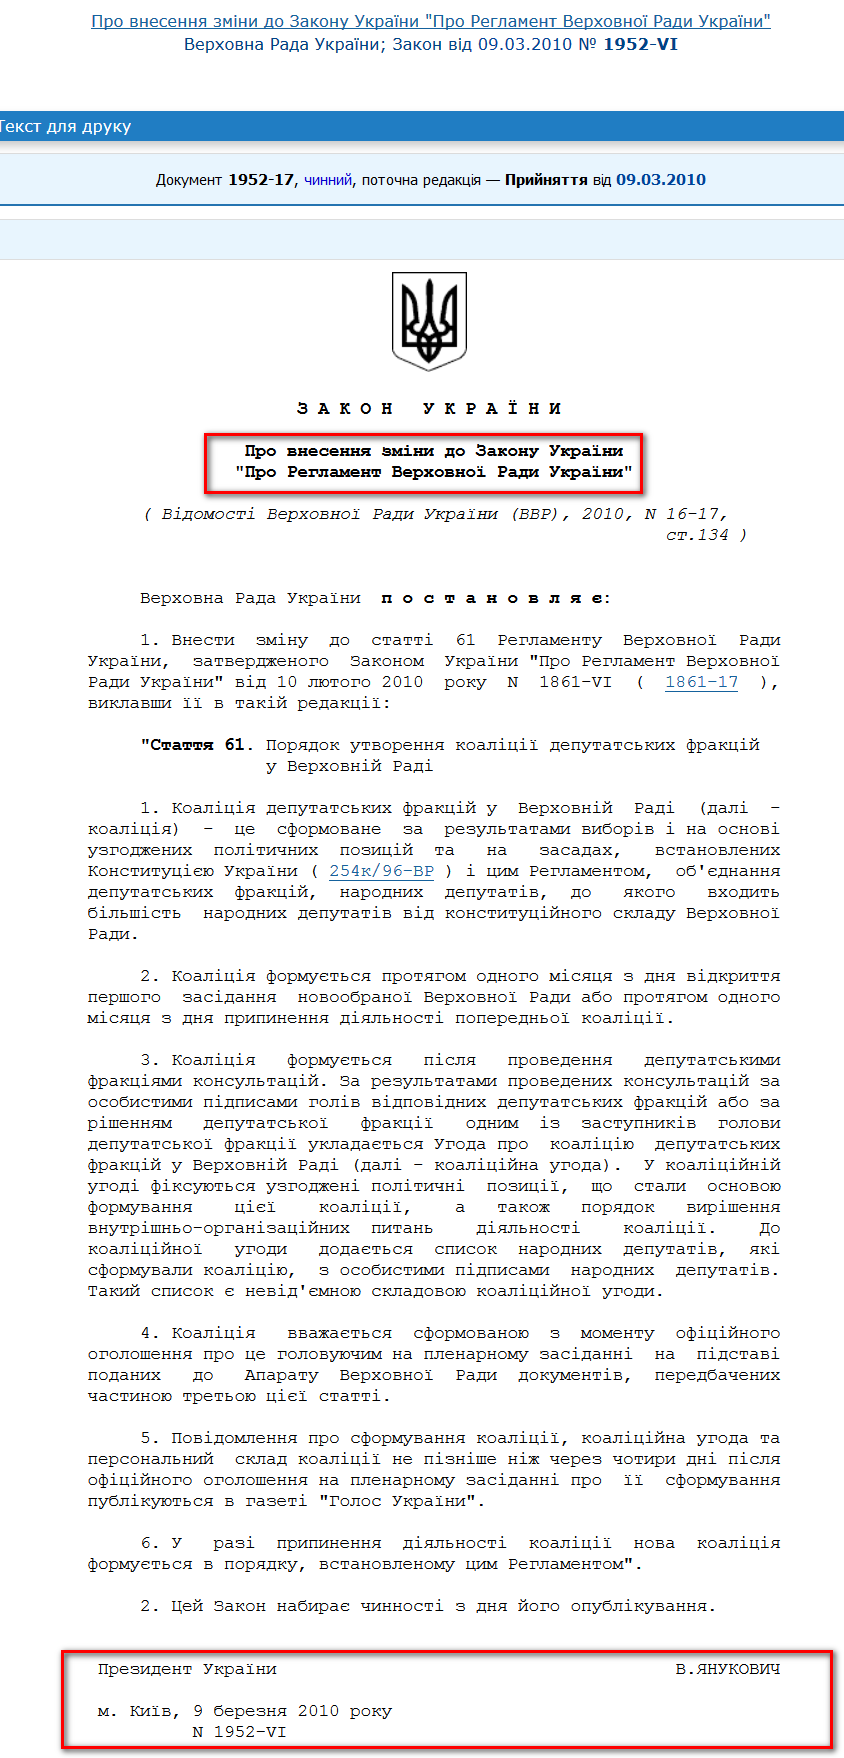 http://zakon1.rada.gov.ua/laws/show/1952-17